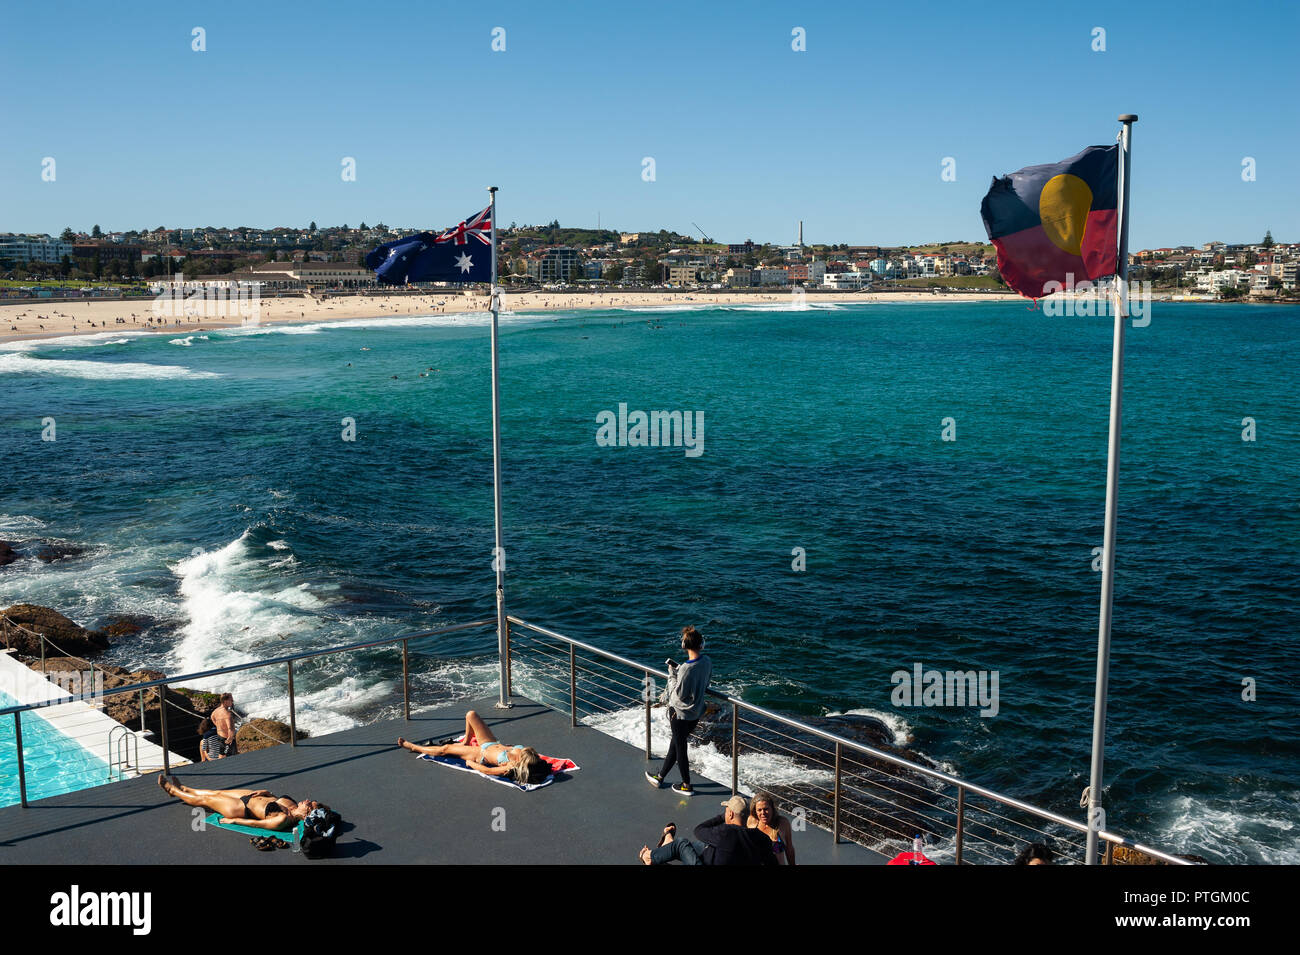 21.09.2018, Sydney, Nuovo Galles del Sud, Australia - si vedono persone a prendere il sole sulla terrazza al sole di Bondi iceberg club di nuoto. Foto Stock